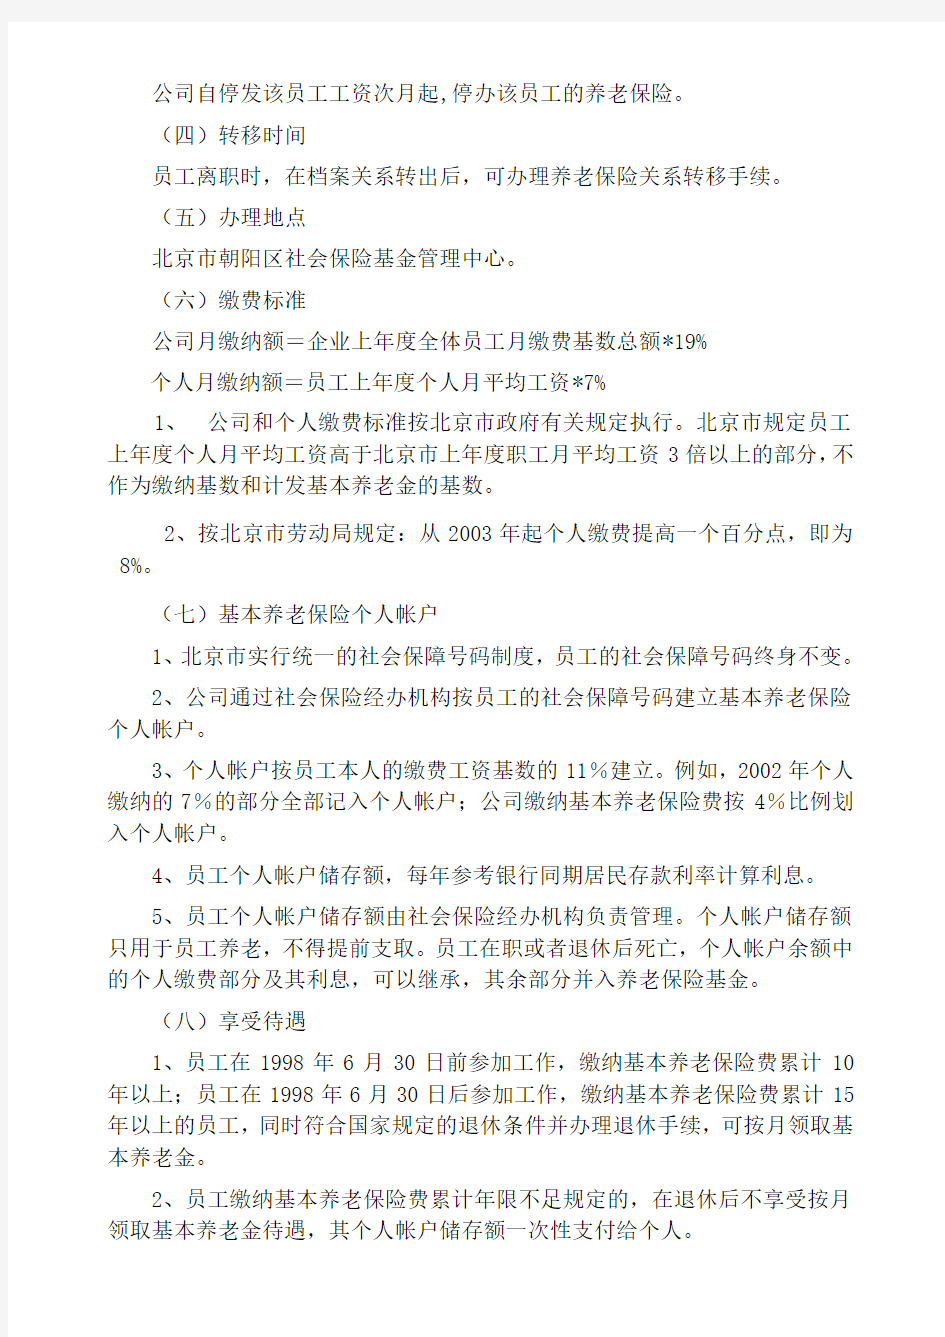 北京股份公司人力资源管理制度员工福利管理办法 